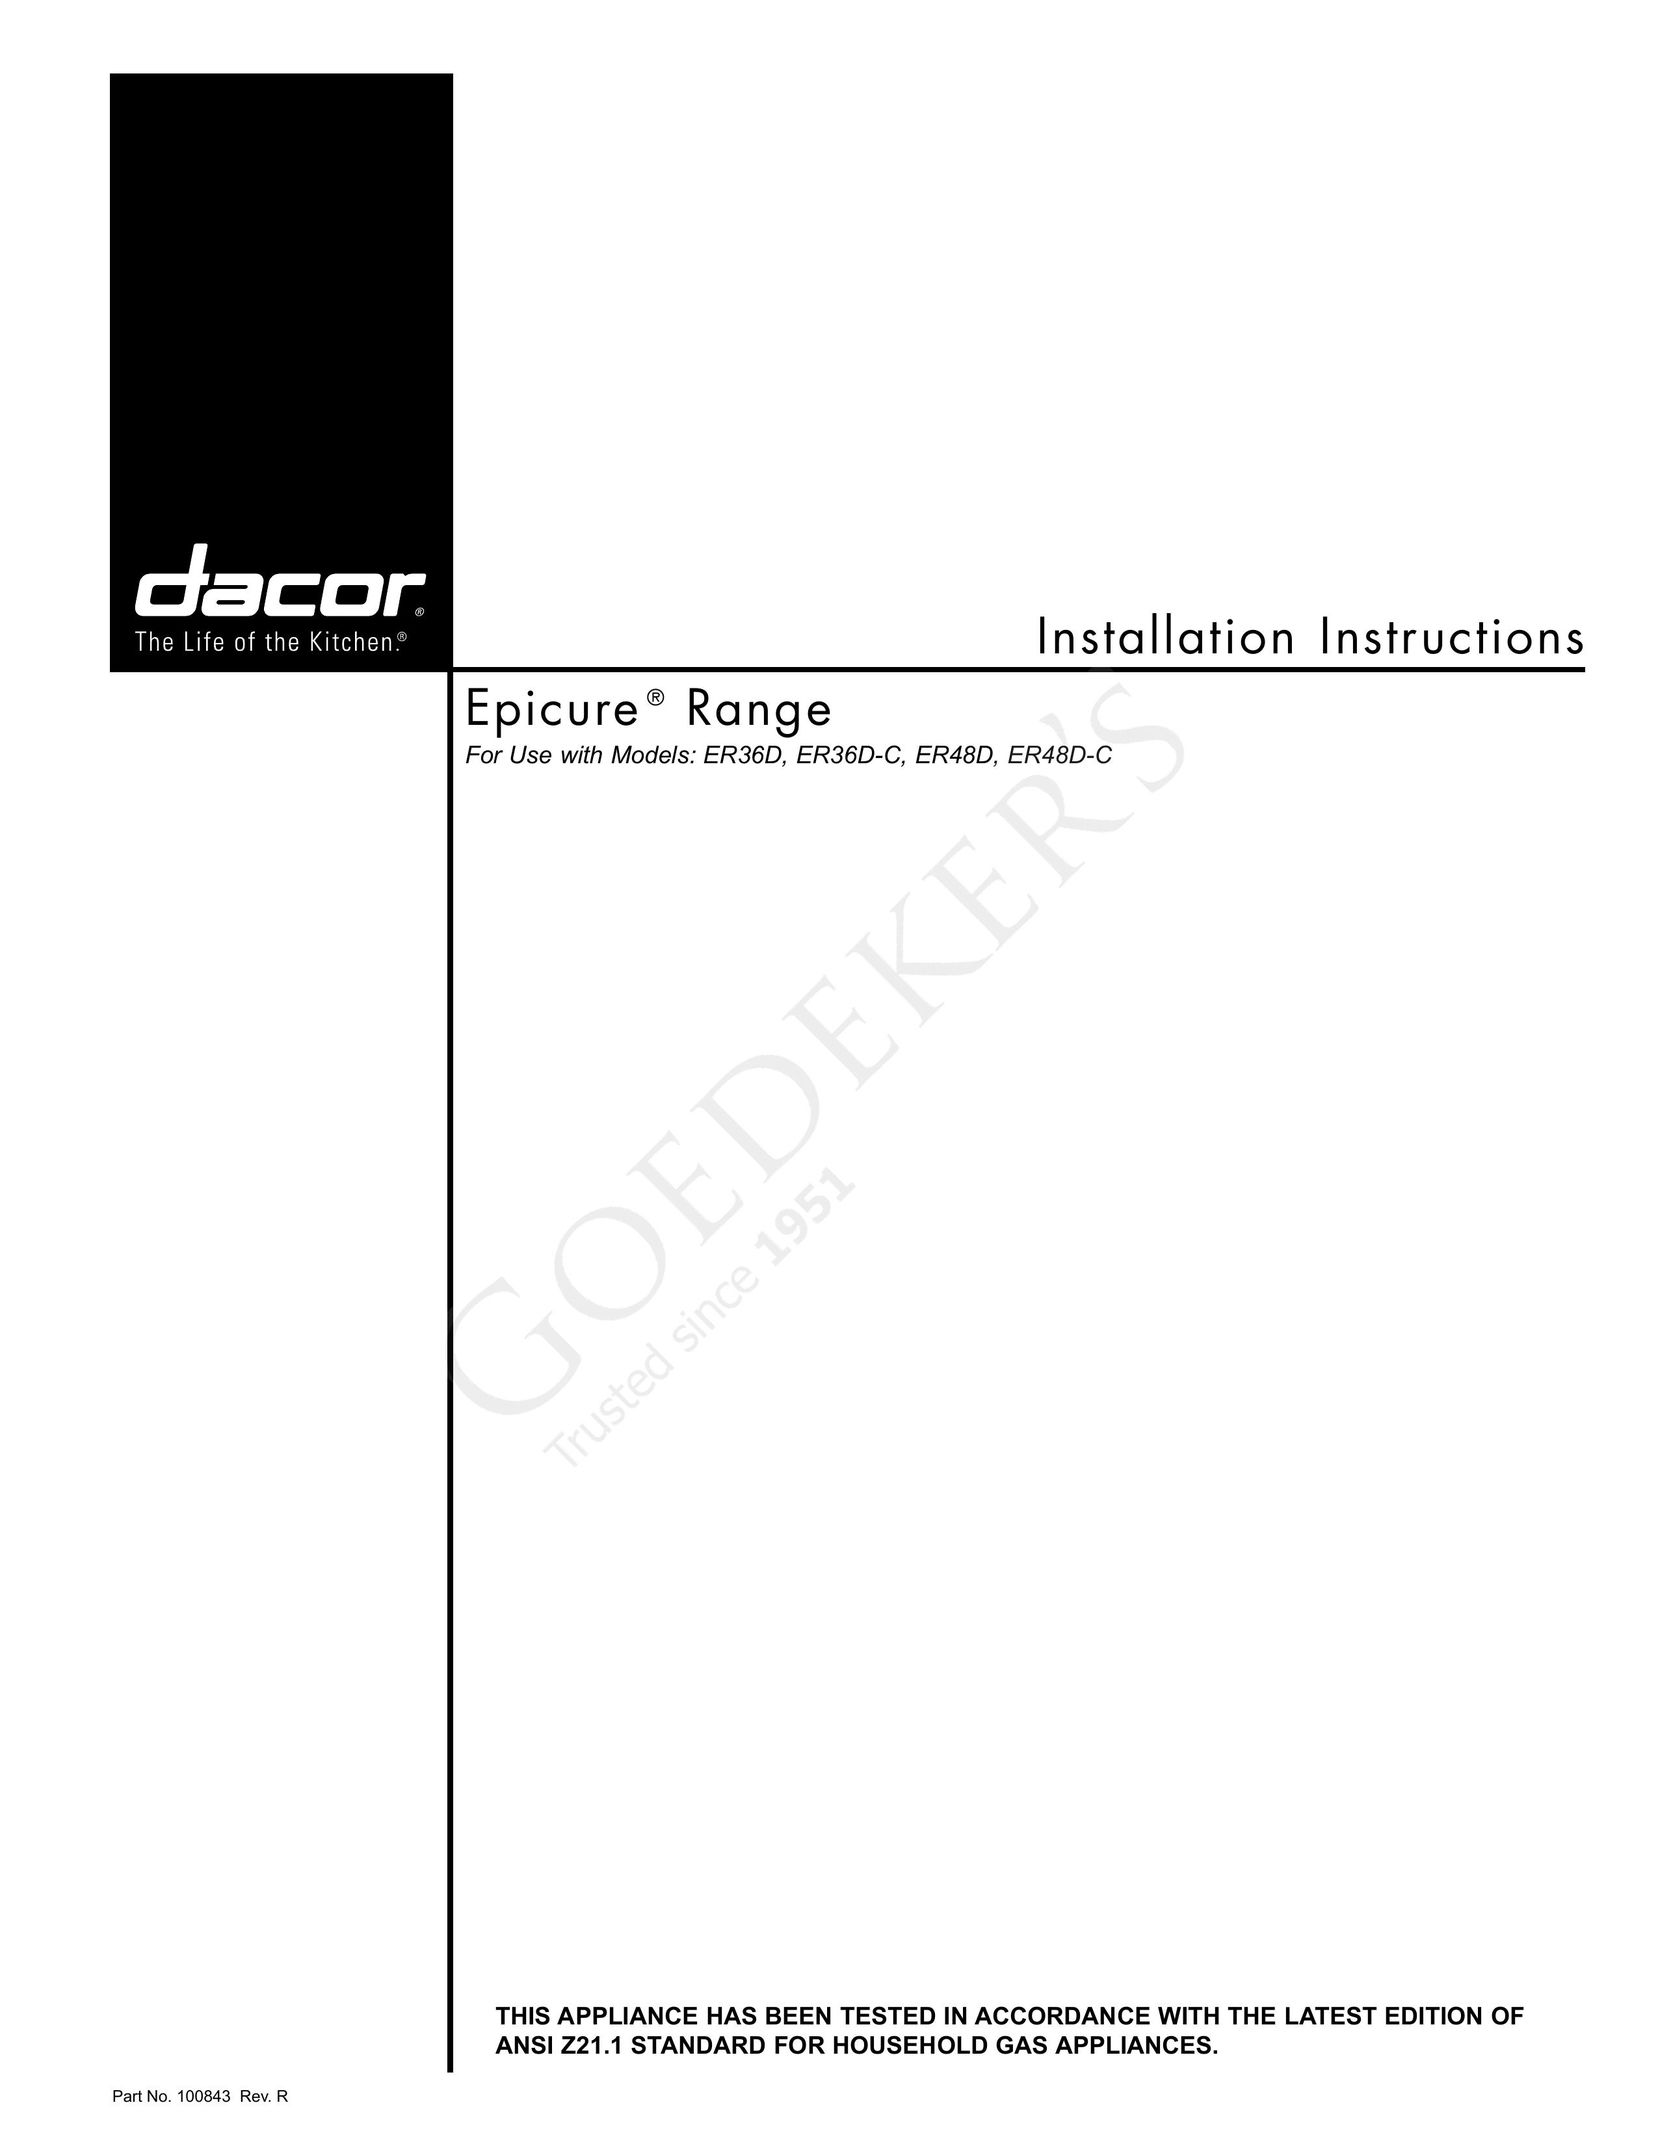 Dacor ER36D-C Oven User Manual